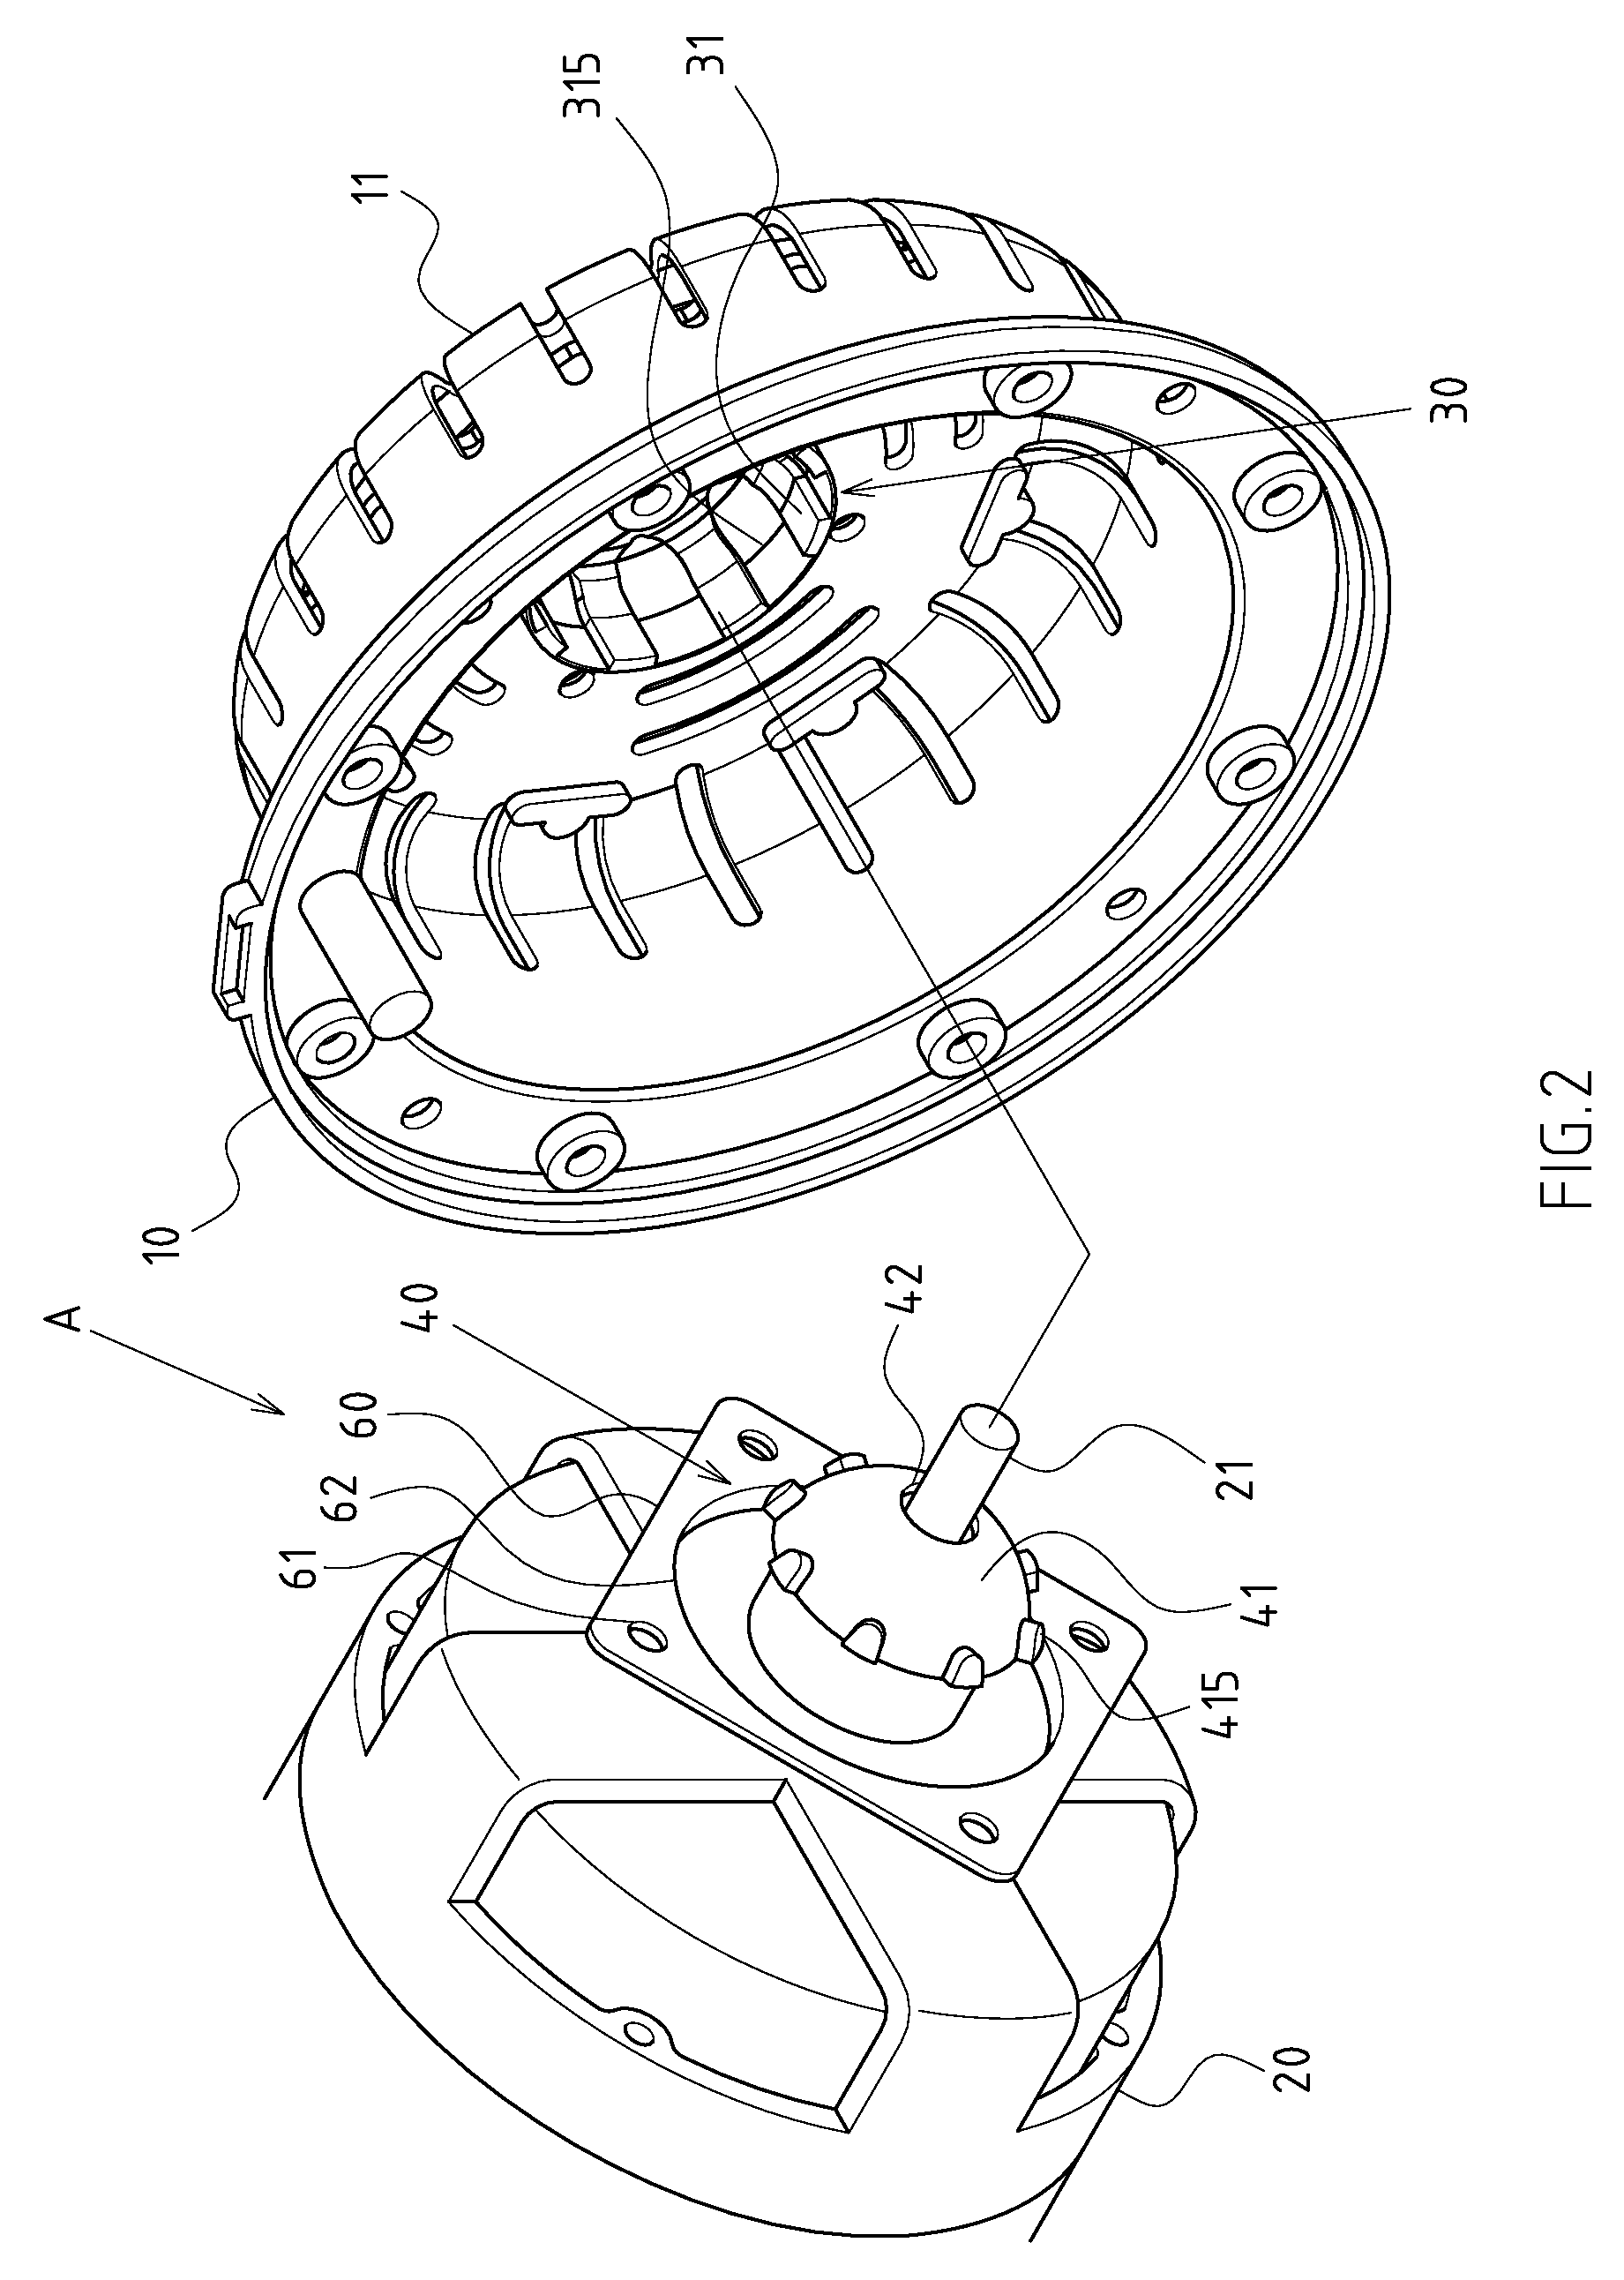 Built-in swing mechanism of rotary fan